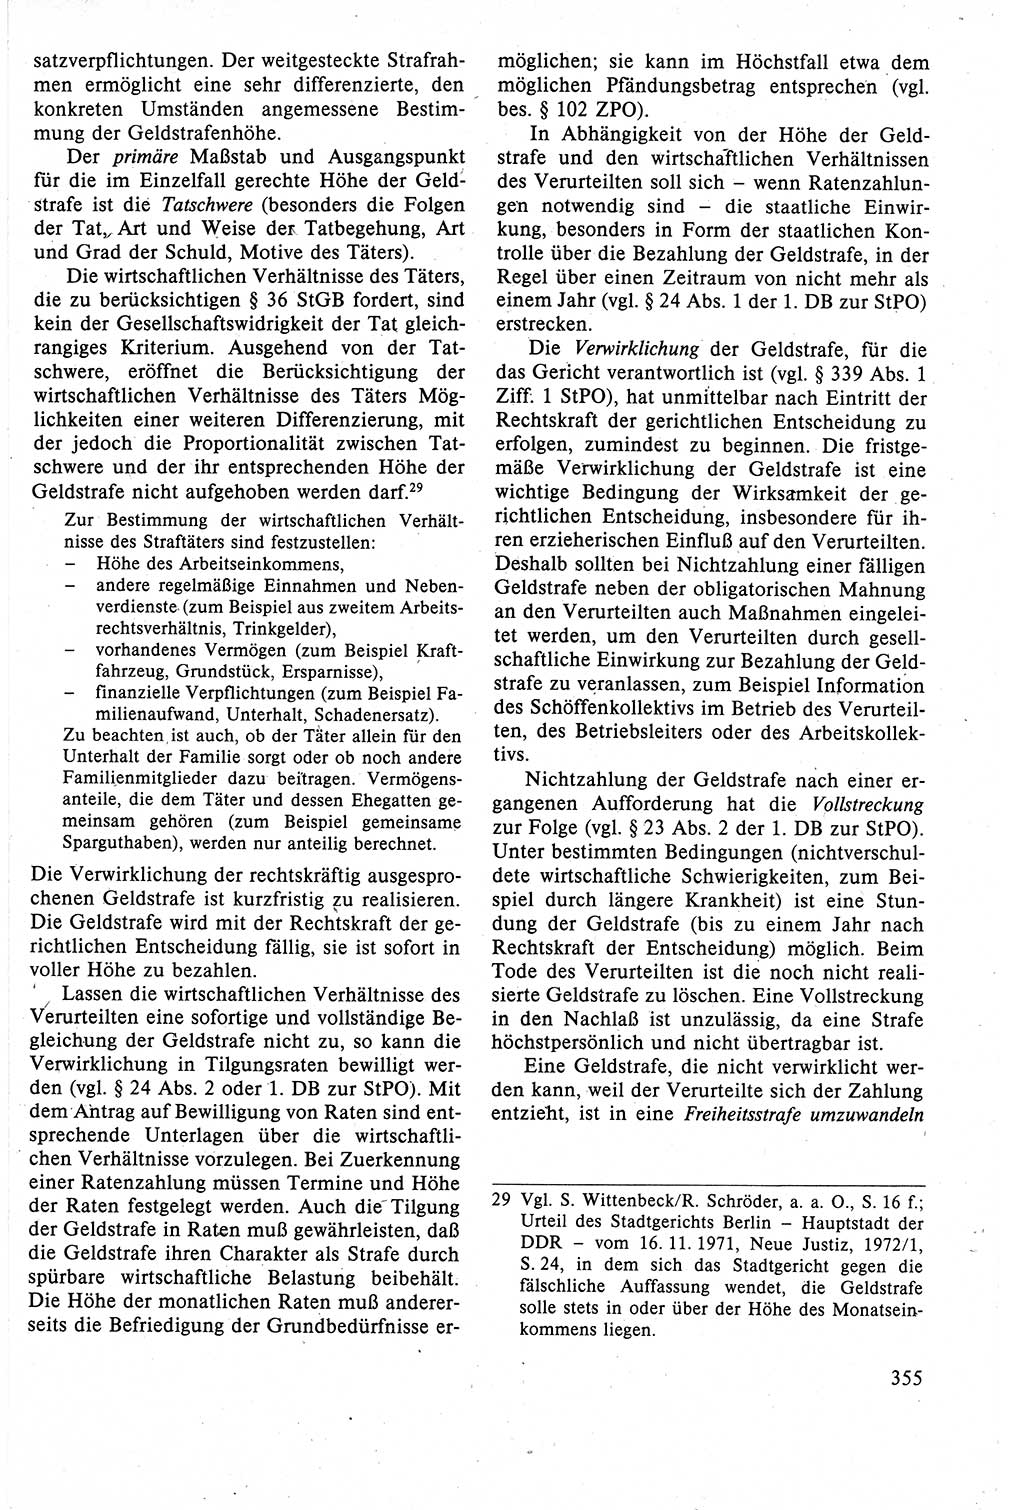 Strafrecht der DDR (Deutsche Demokratische Republik), Lehrbuch 1988, Seite 355 (Strafr. DDR Lb. 1988, S. 355)